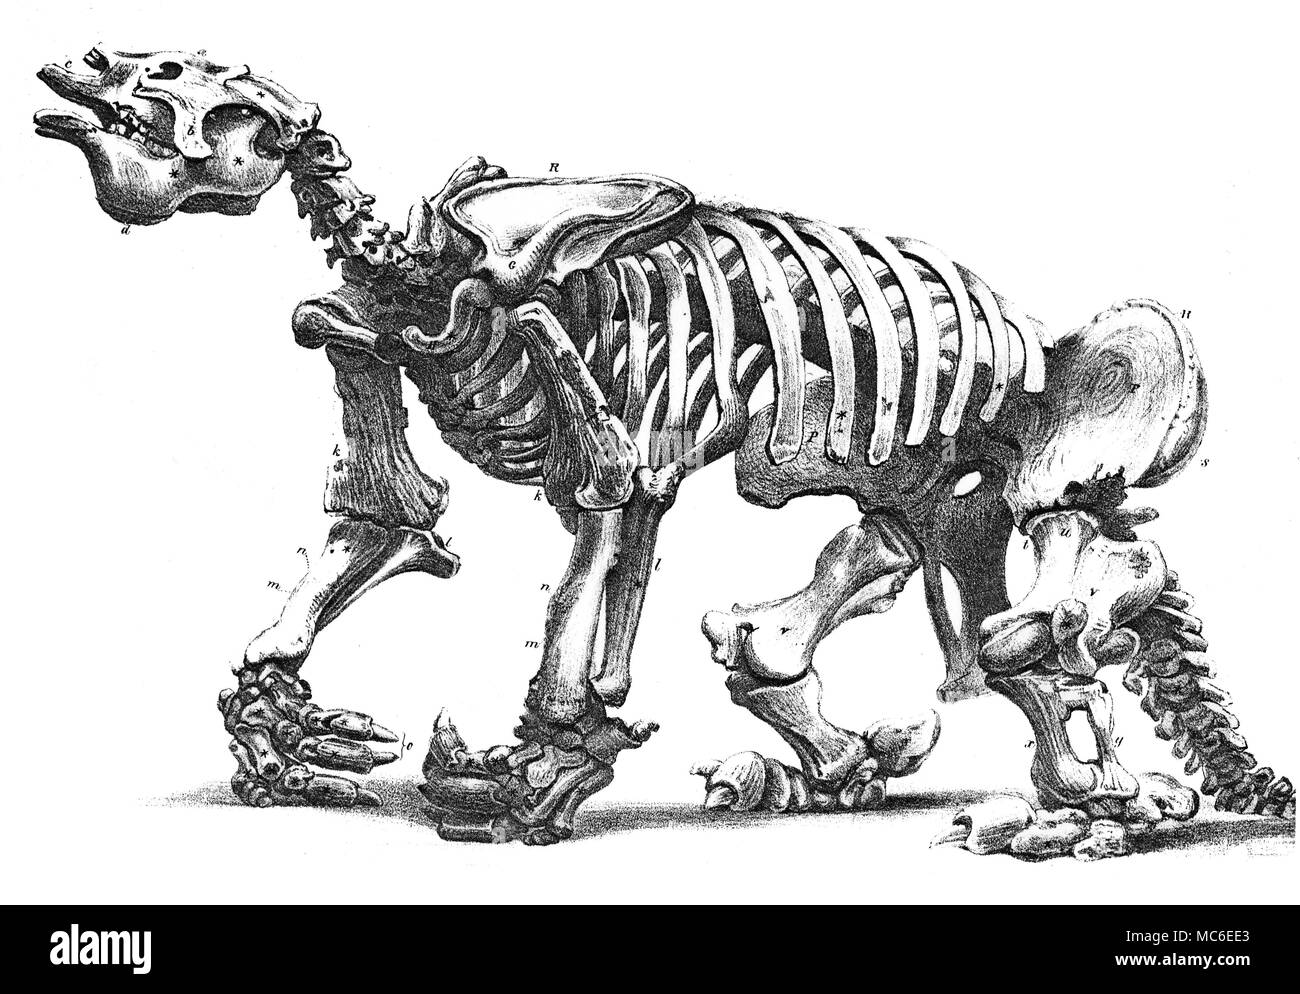 Mostri litografia (da W.L. Walton) dello scheletro di un Megatherium, conservato presso il Royal College of Surgeons, dopo un disegno da Waterhouse Hawkins. Fold-out piastra, da Francesco T. Buckland, geologia e mineralogia, 1858. Foto Stock